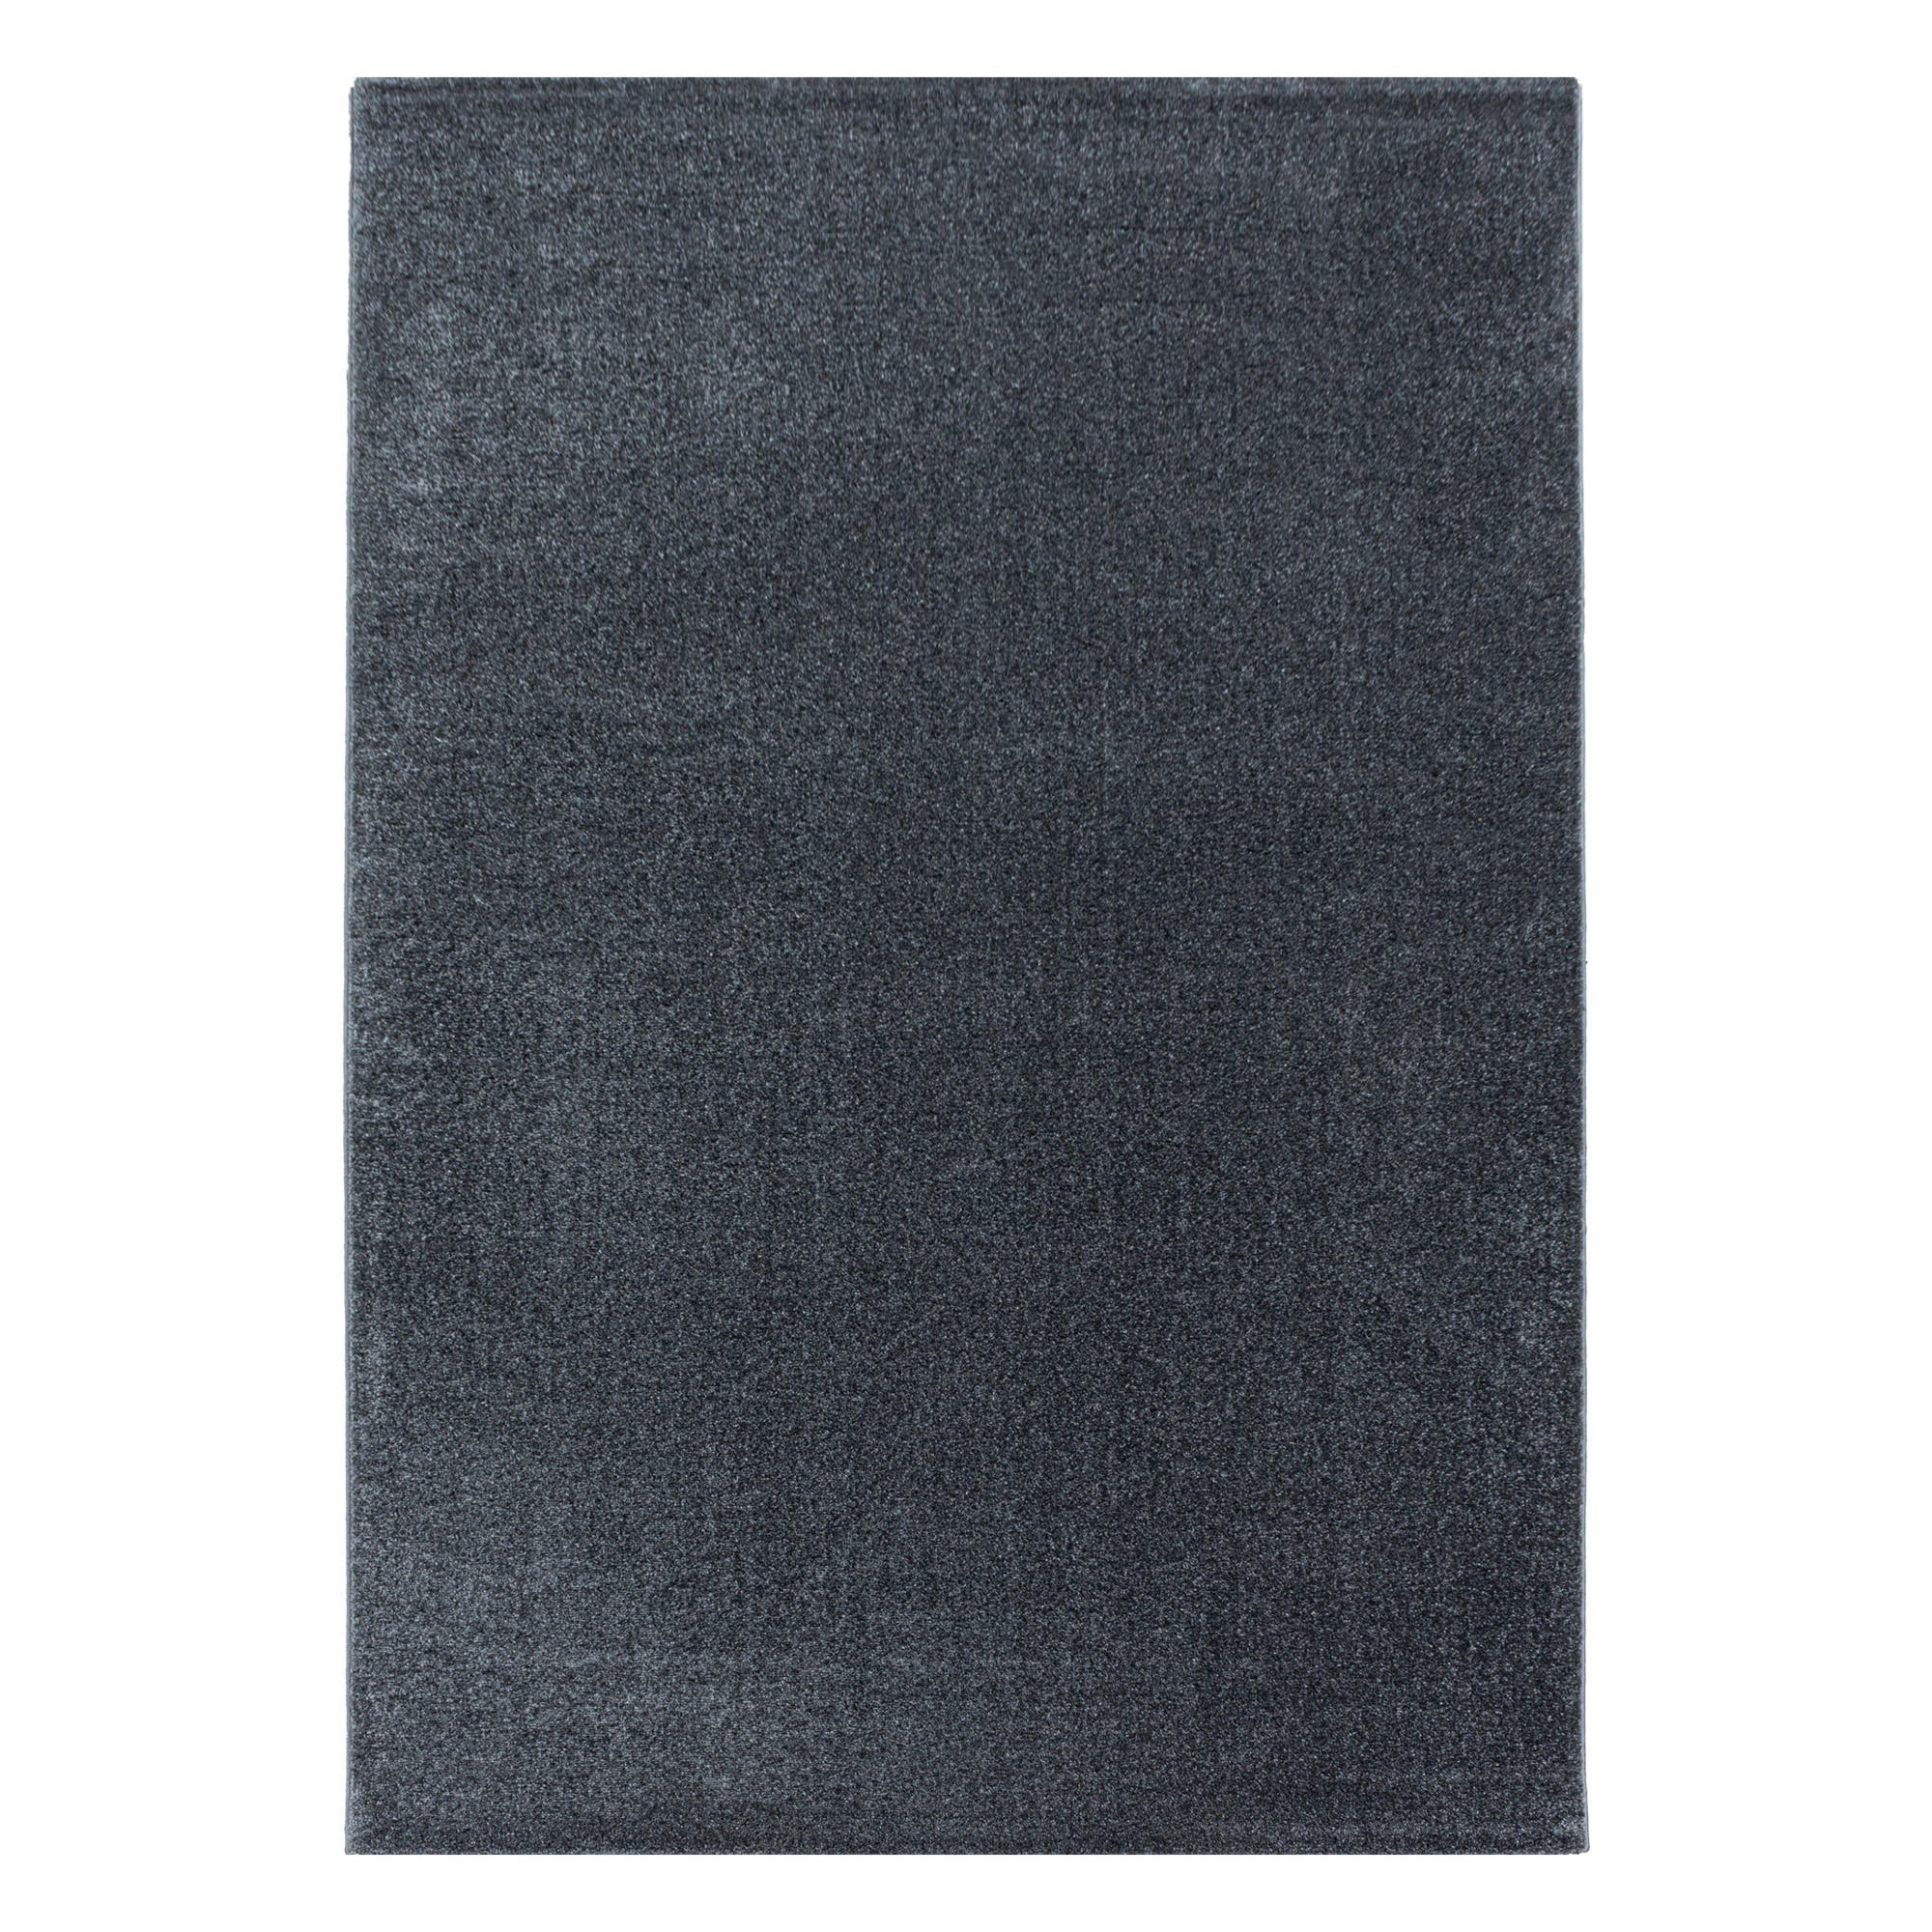 LÄUFER  80/250 cm  Grau  - Grau, Basics, Textil (80/250cm) - Novel